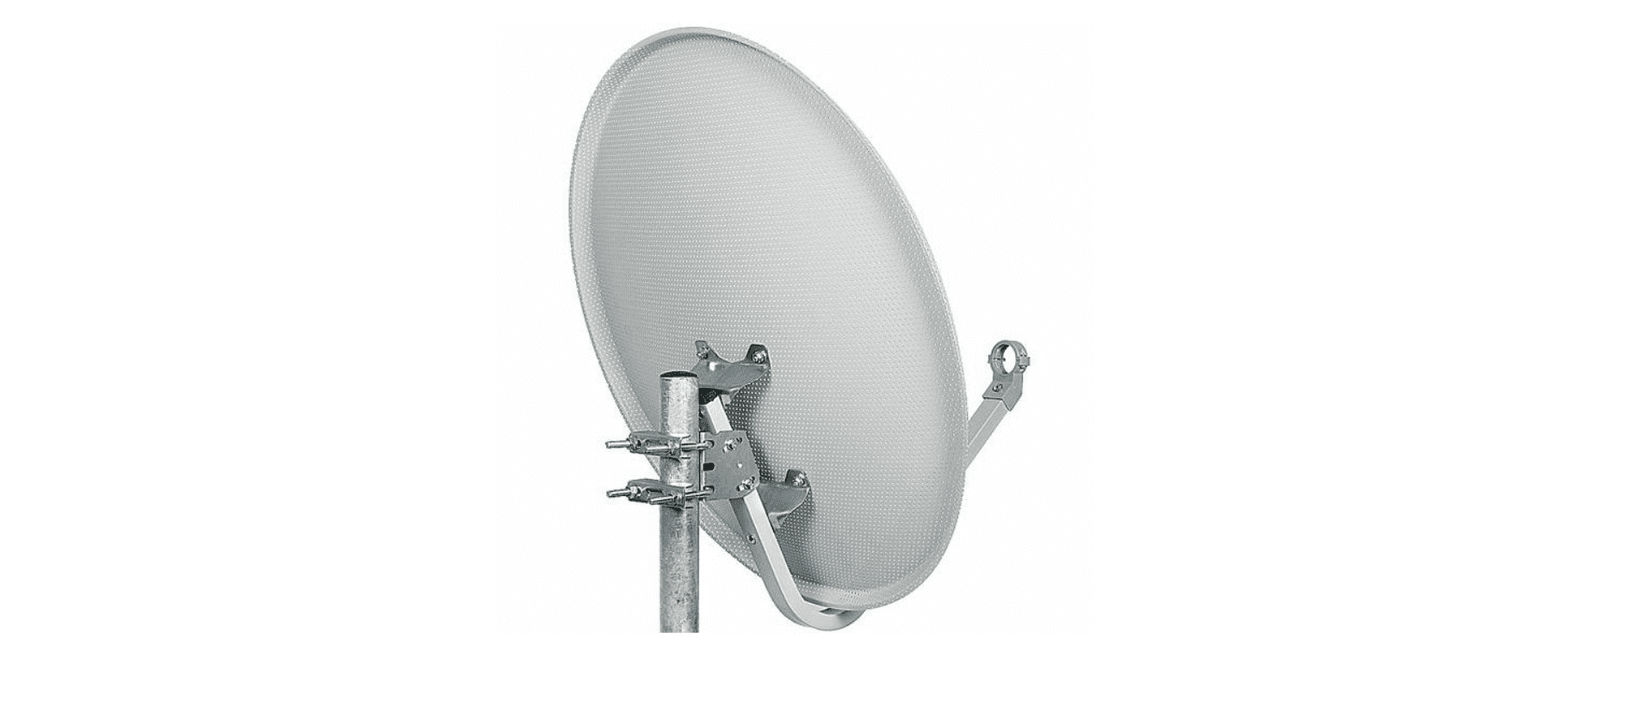 FALCOM Satelitska antena šupljikava 97 cm MESH Triax srebrna